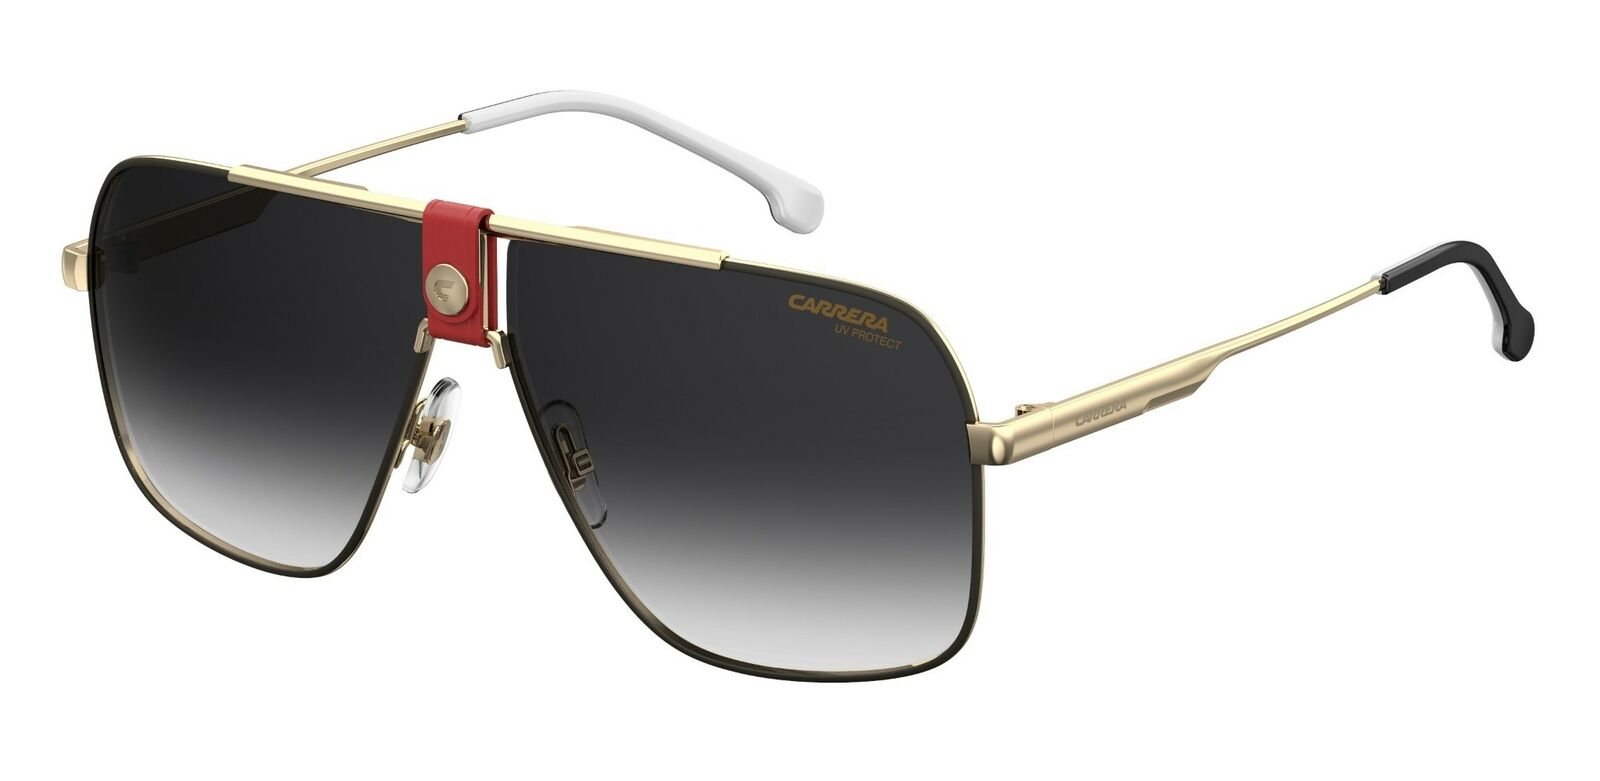 Carrera 1018/S 0Y11/9O Gold Red/ Dark Gray Gradient Sunglasses